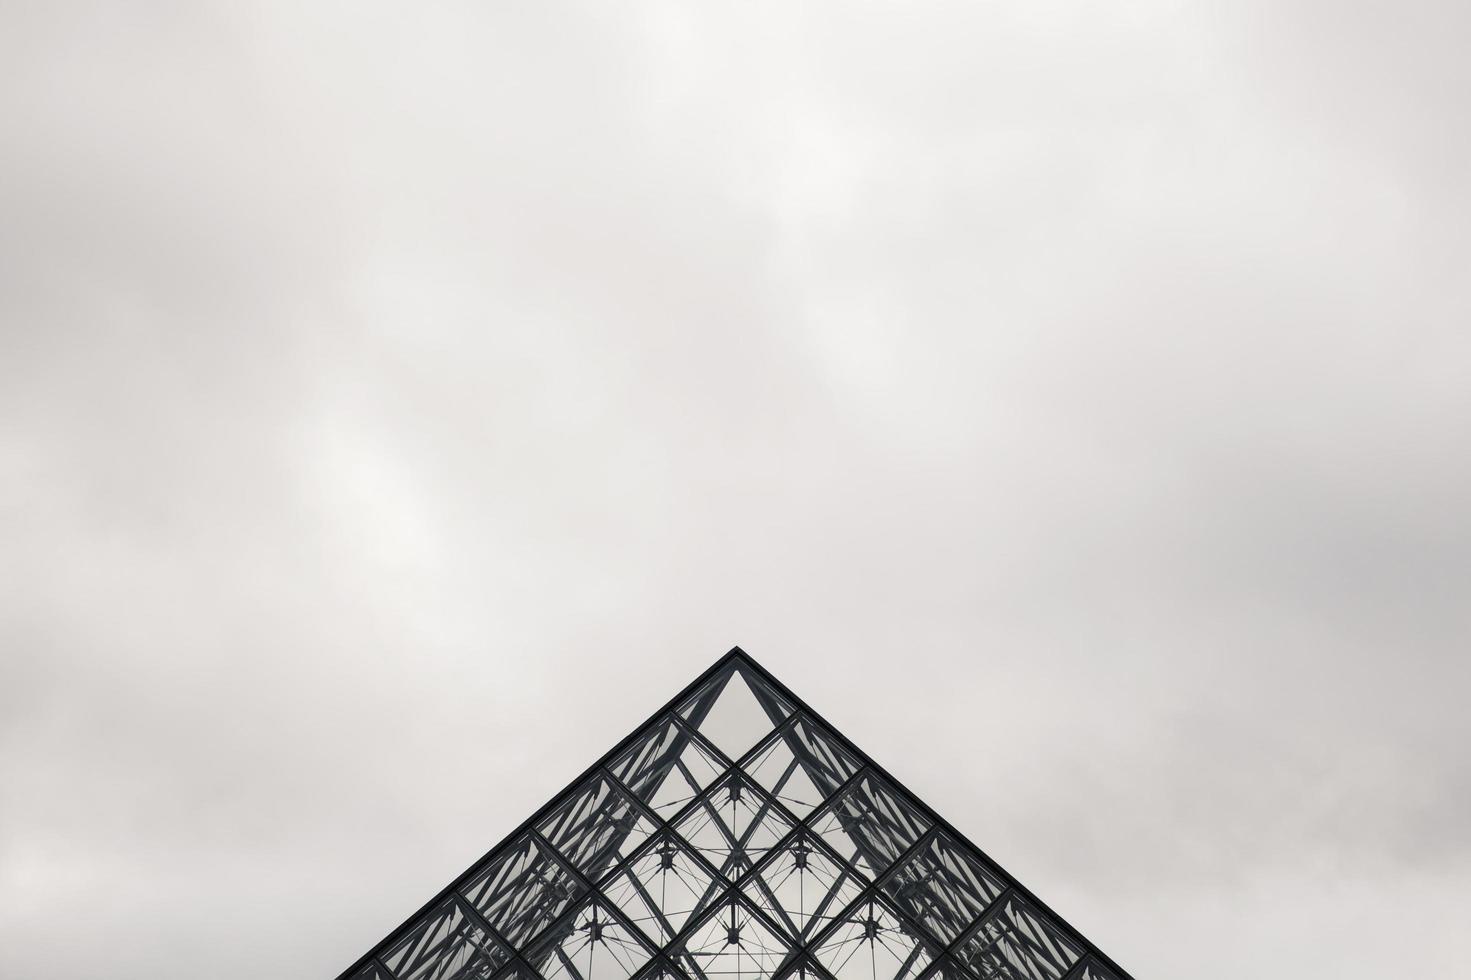 paris, france, 2018 - vue sur la pyramide du louvre à paris, france. La pyramide a été achevée en 1989 et est devenue un monument de Paris photo